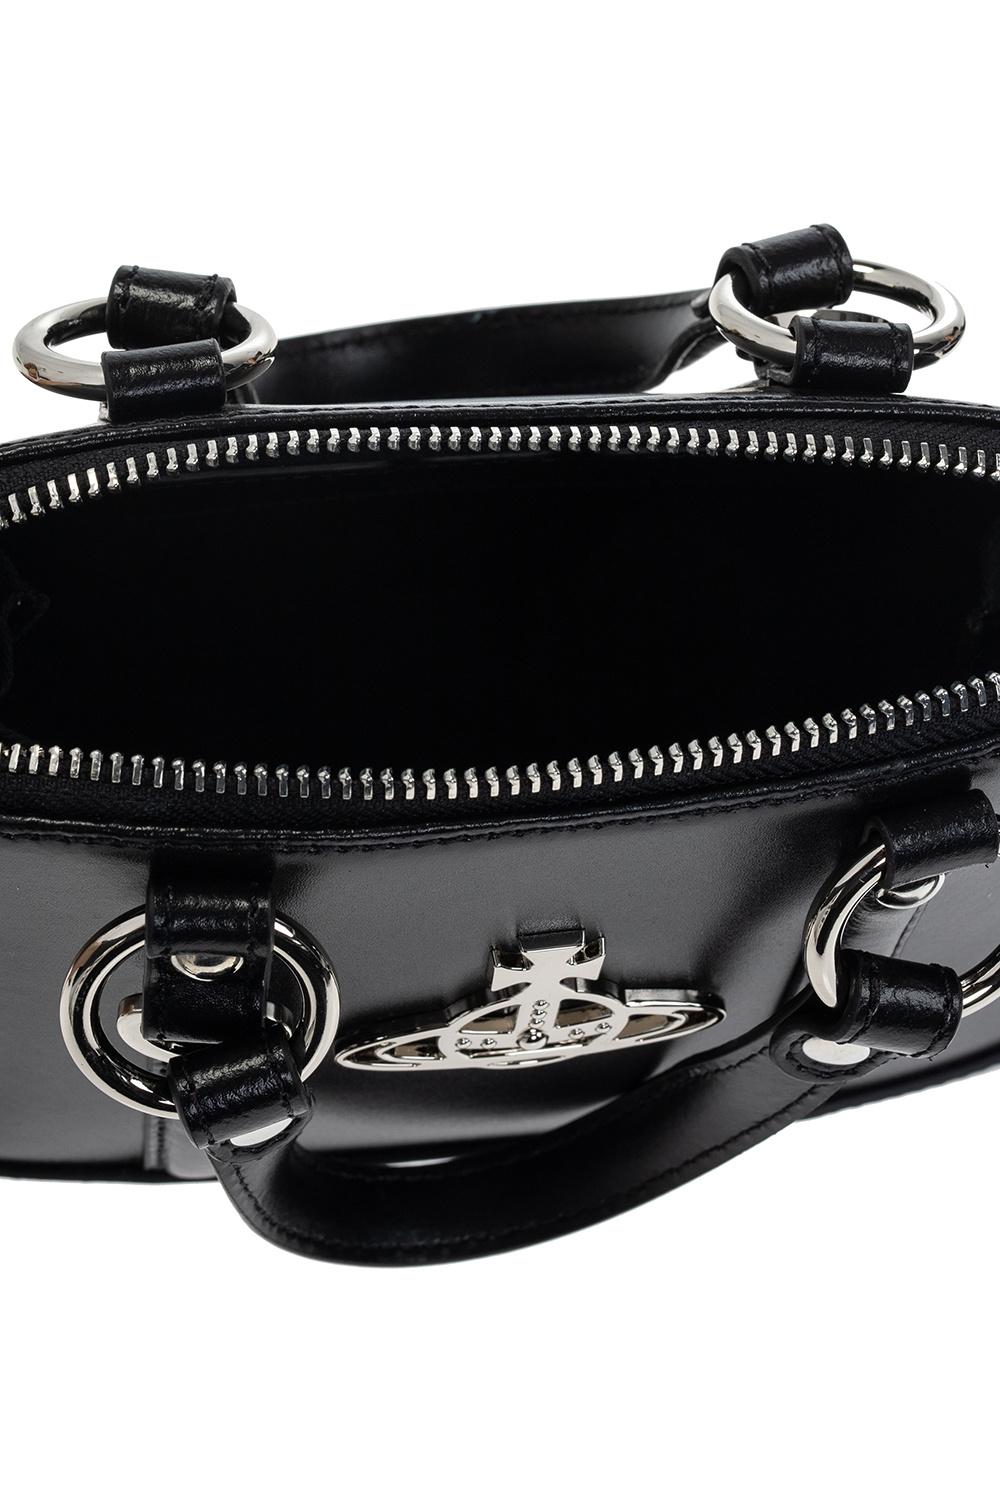 Vivienne Westwood Jordan Small Tote Bag - Black